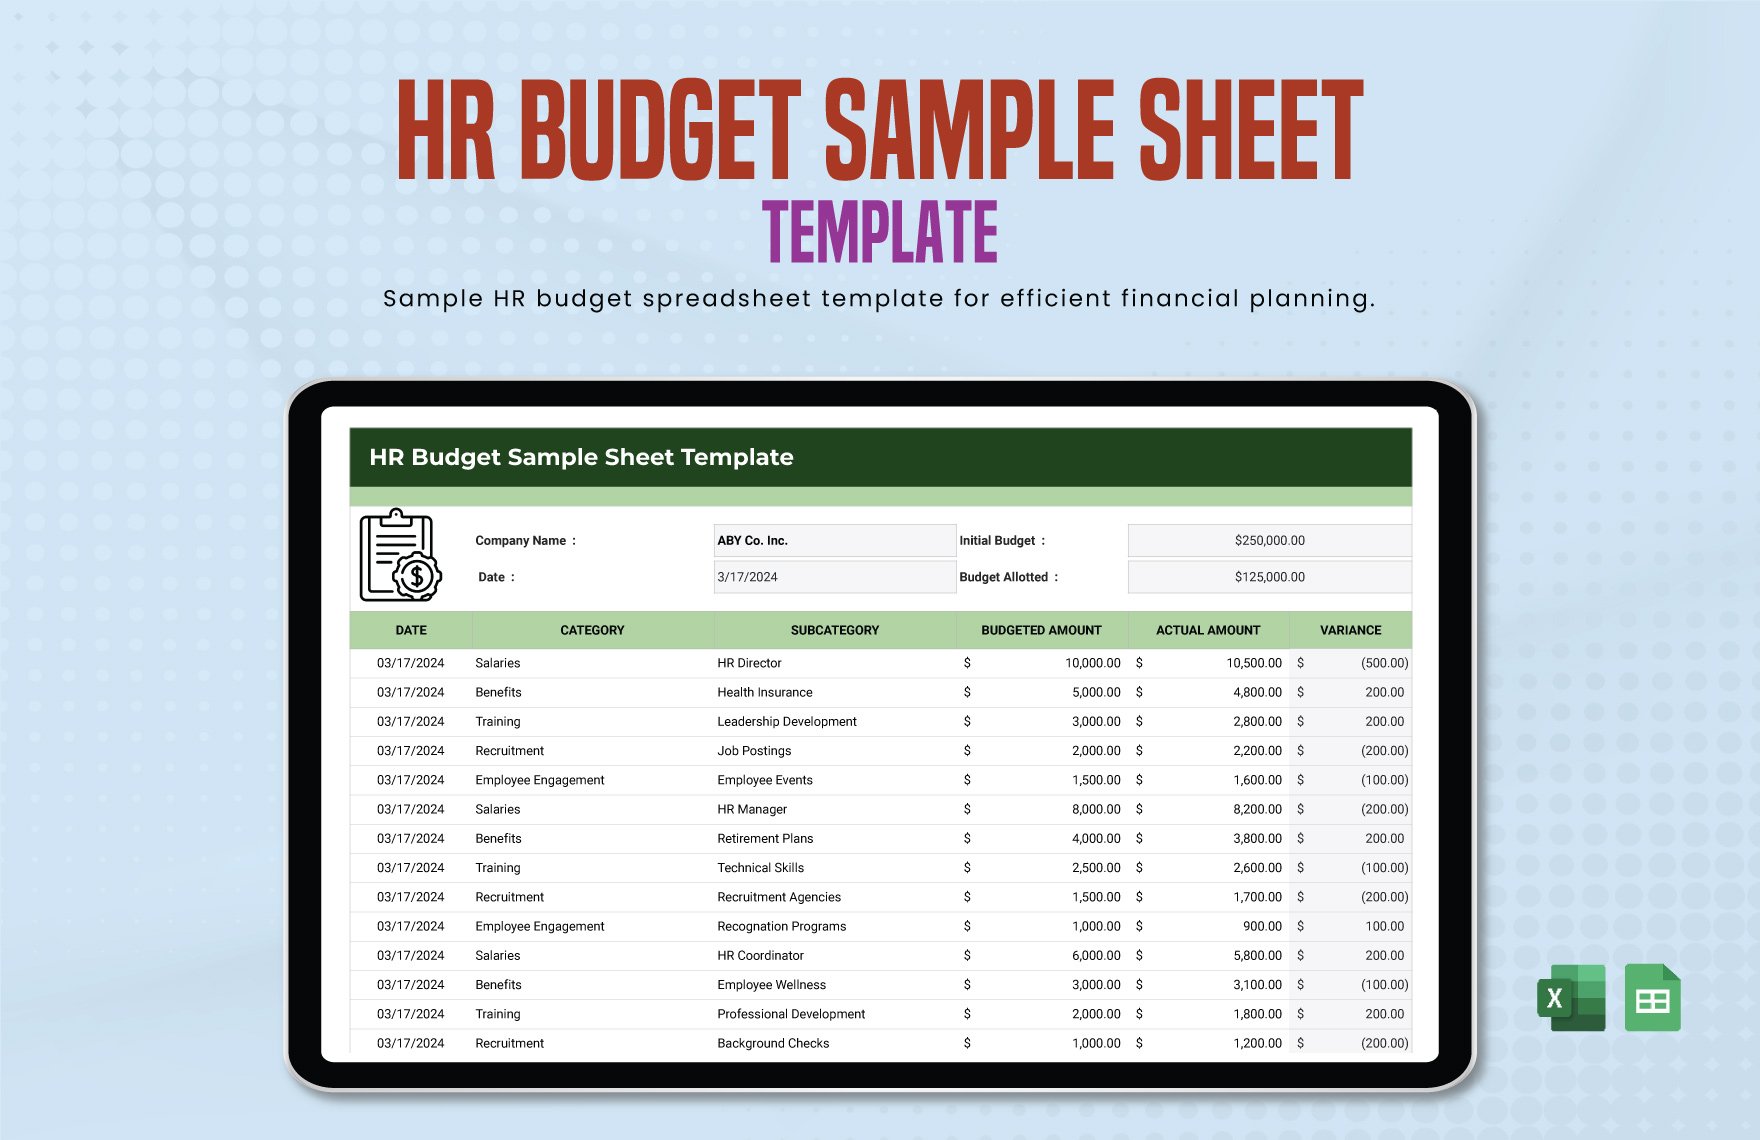 HR Budget Sample Sheet Template